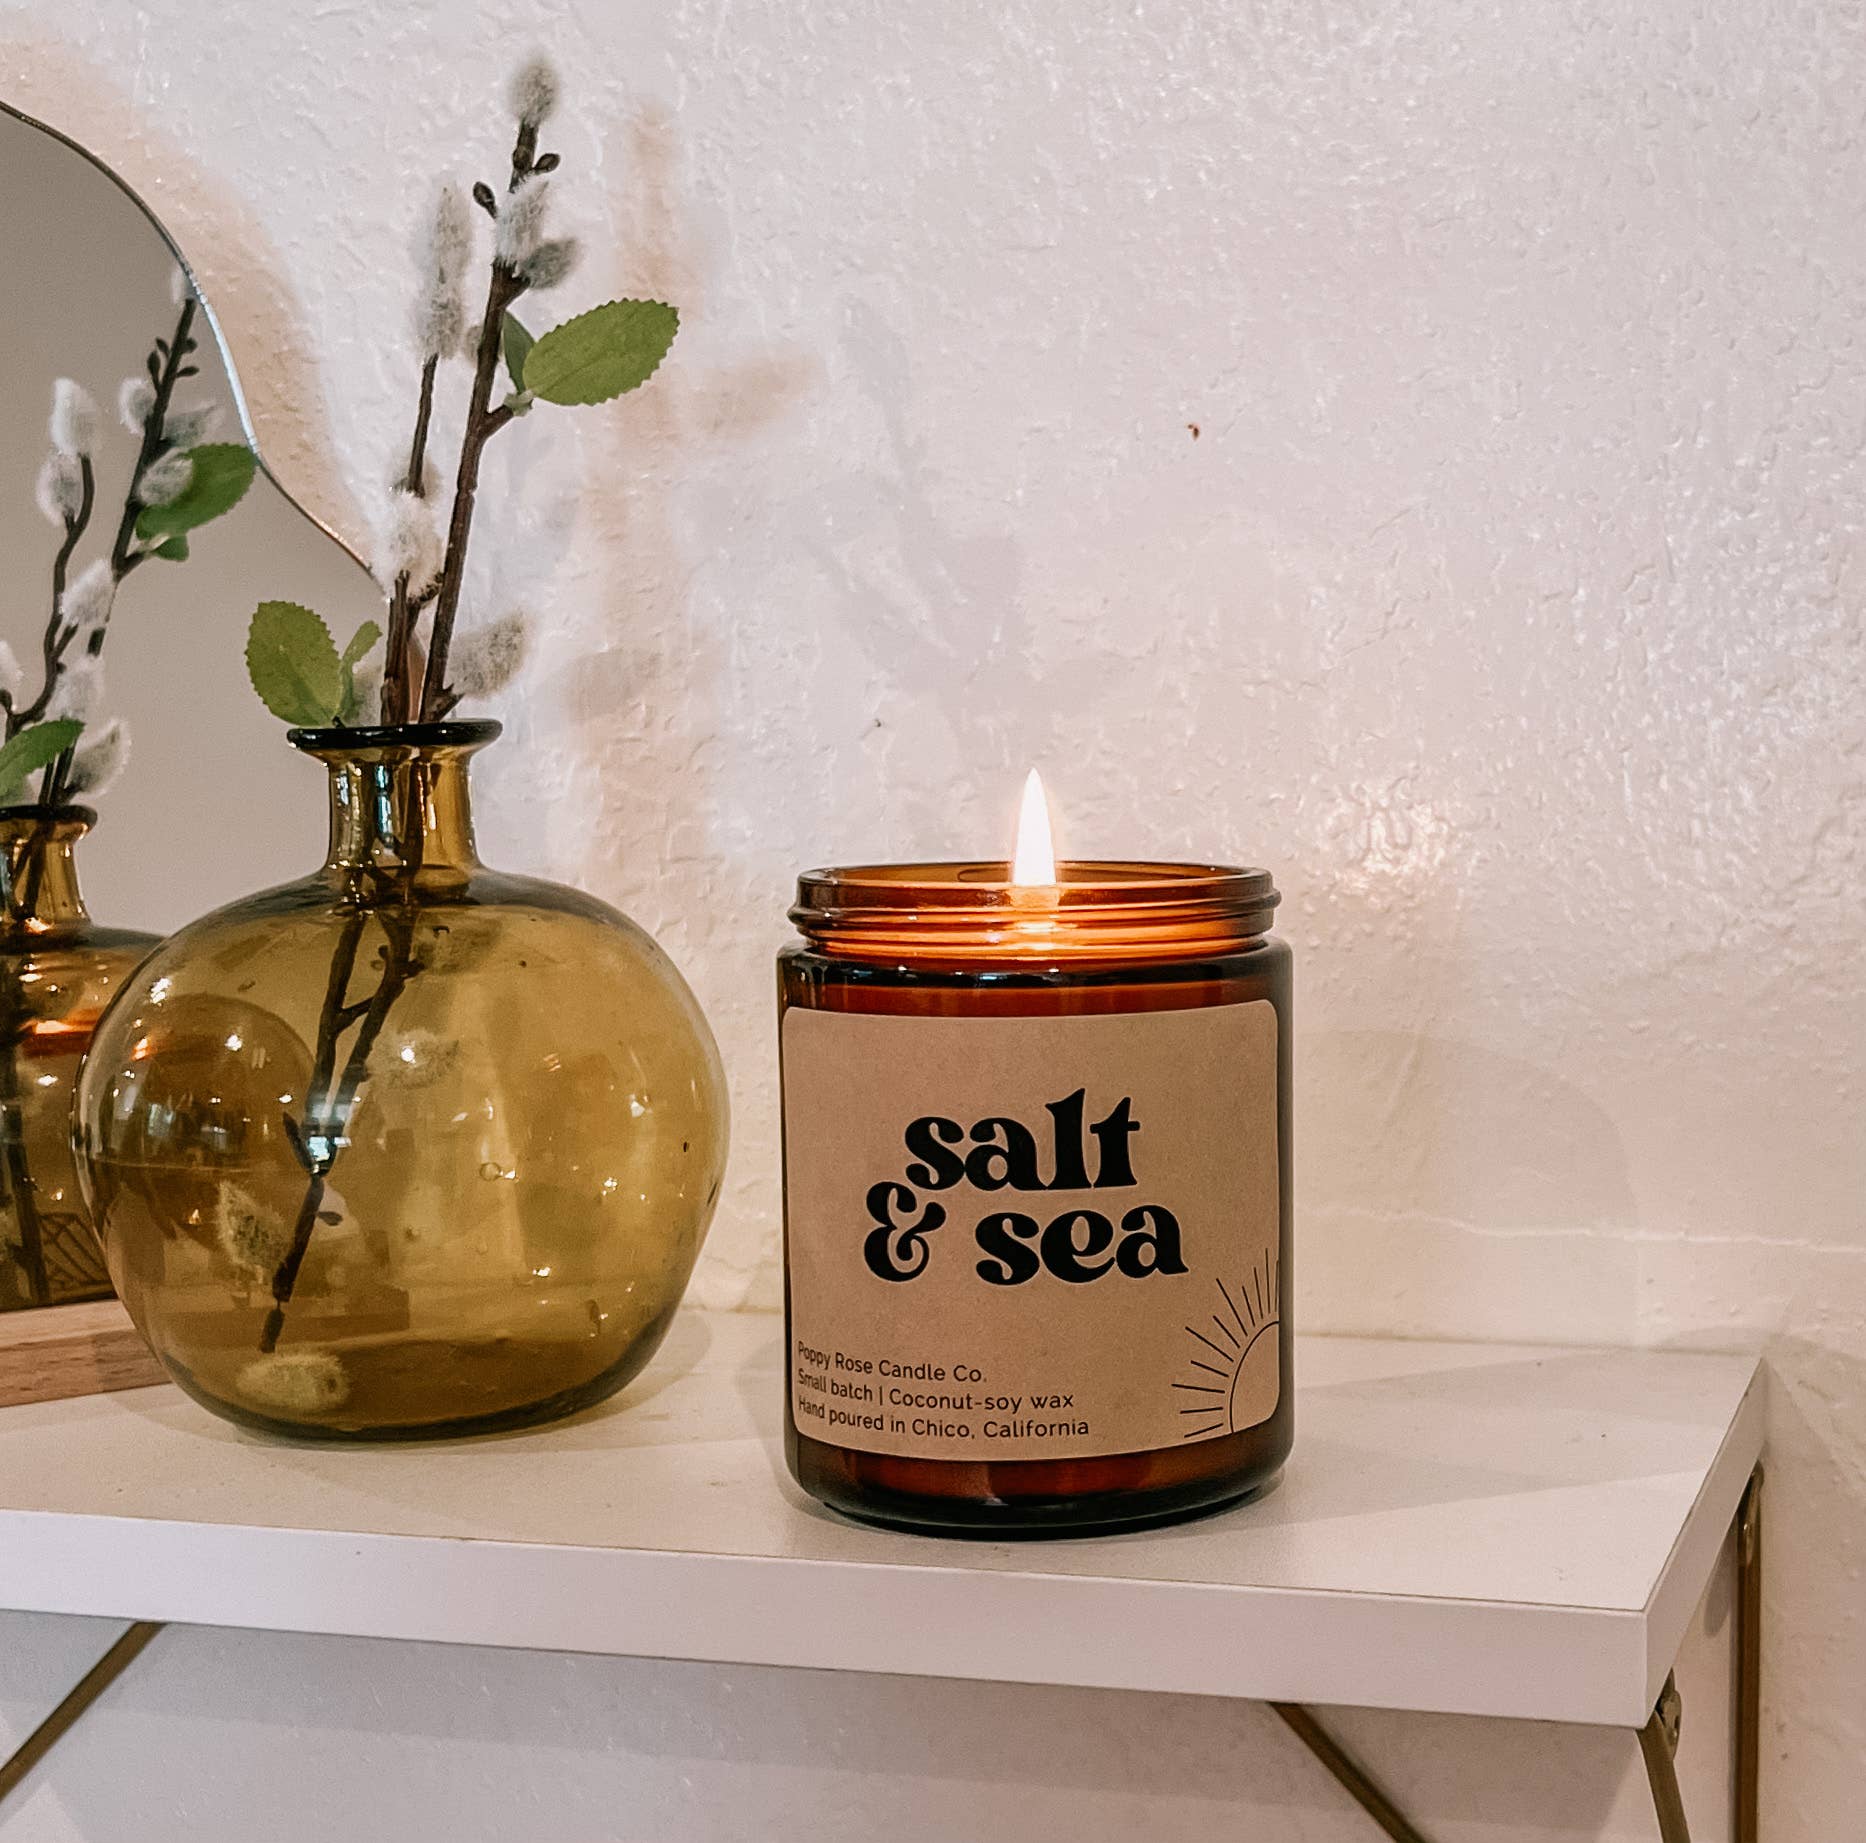 Salt & Sea Coconut Wax Candle